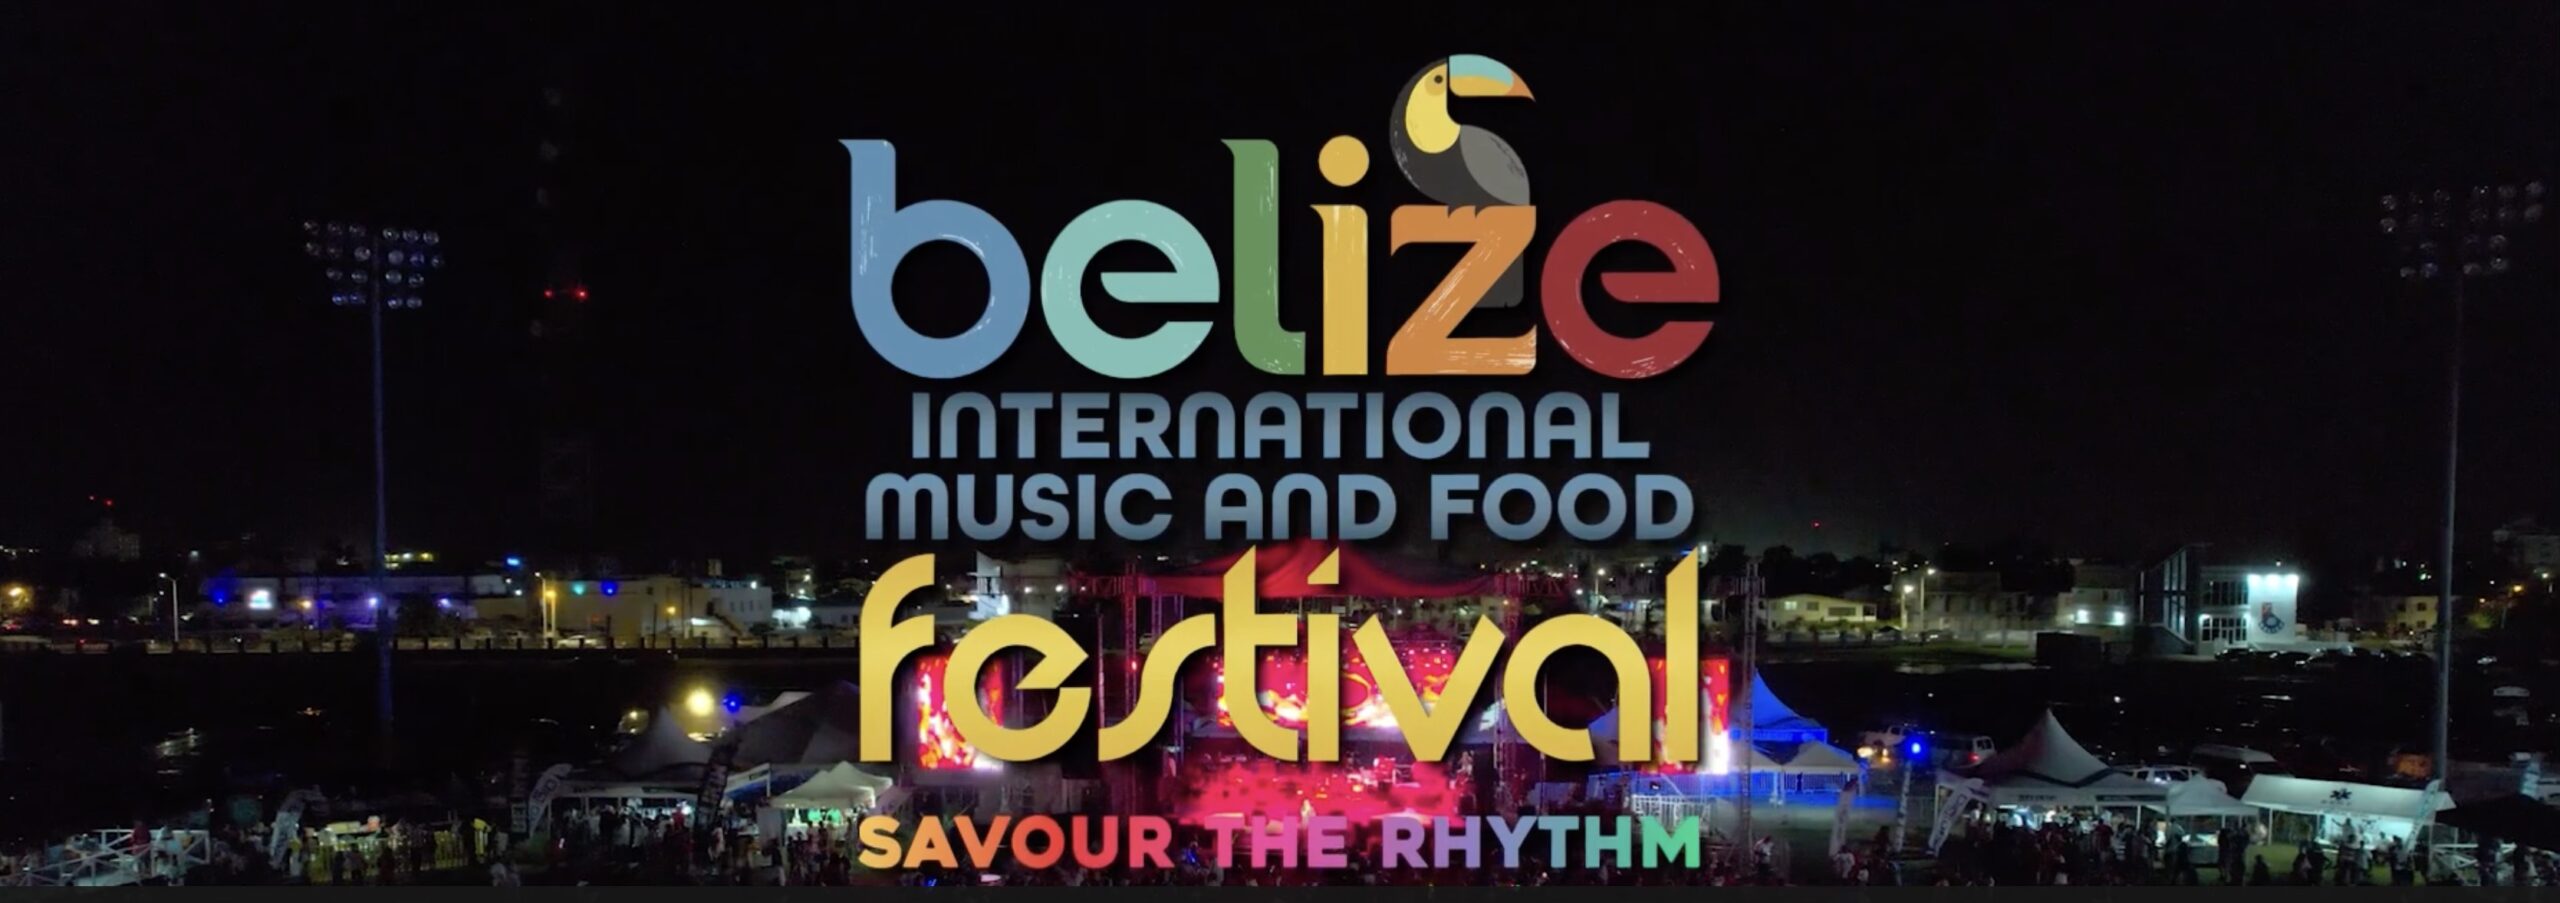 Festival international de musique et de gastronomie de Belize